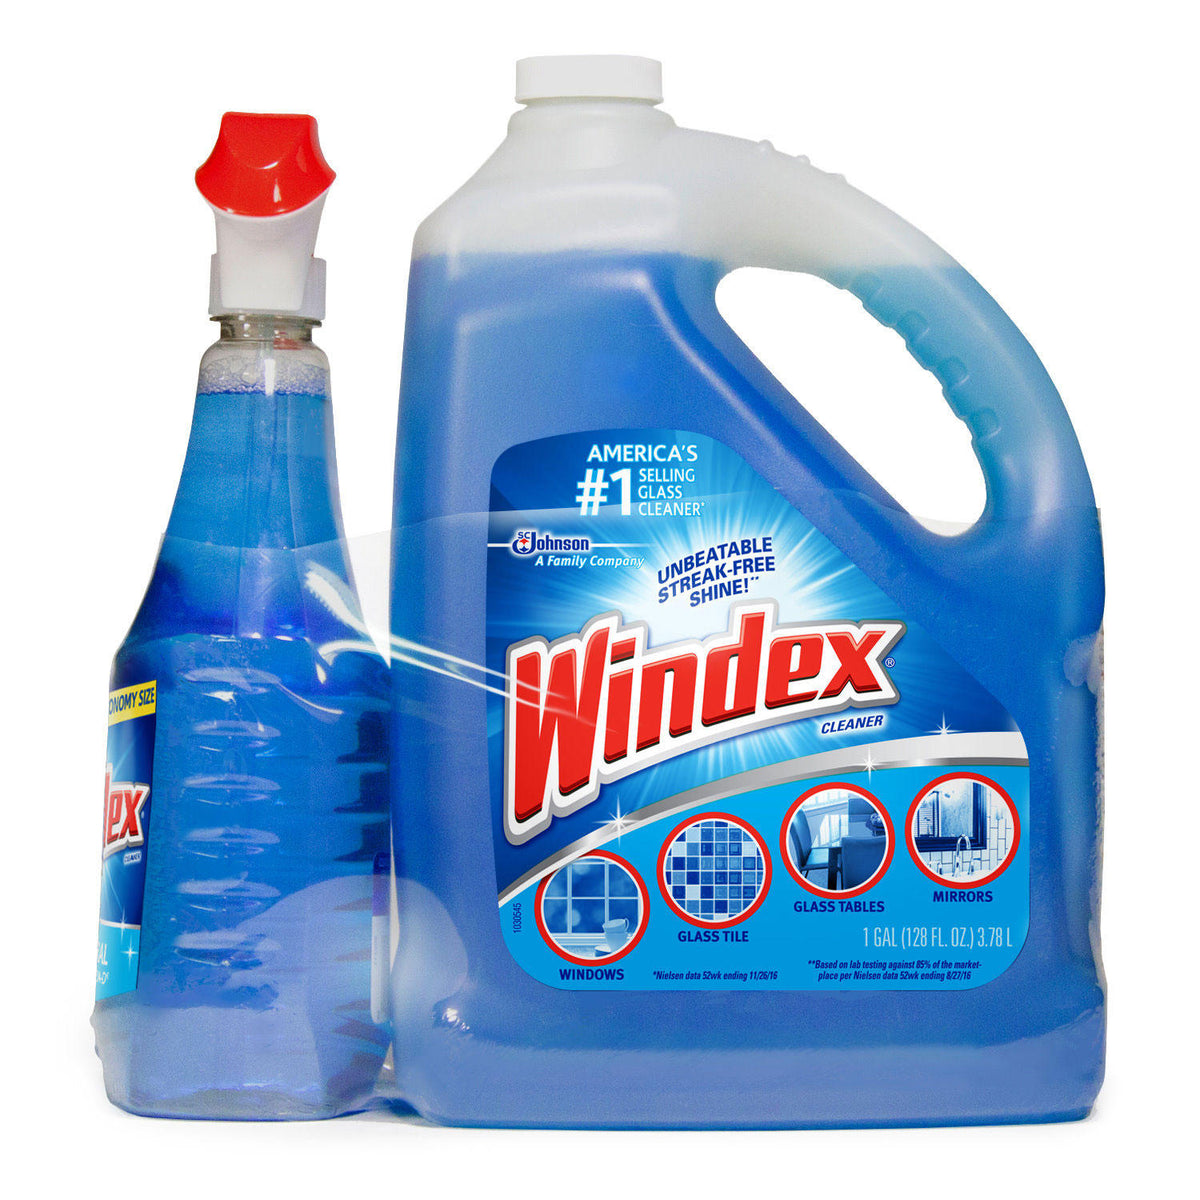 Windex Glass Cleaner, Original Blue, Spray Bottle, 26 fl oz